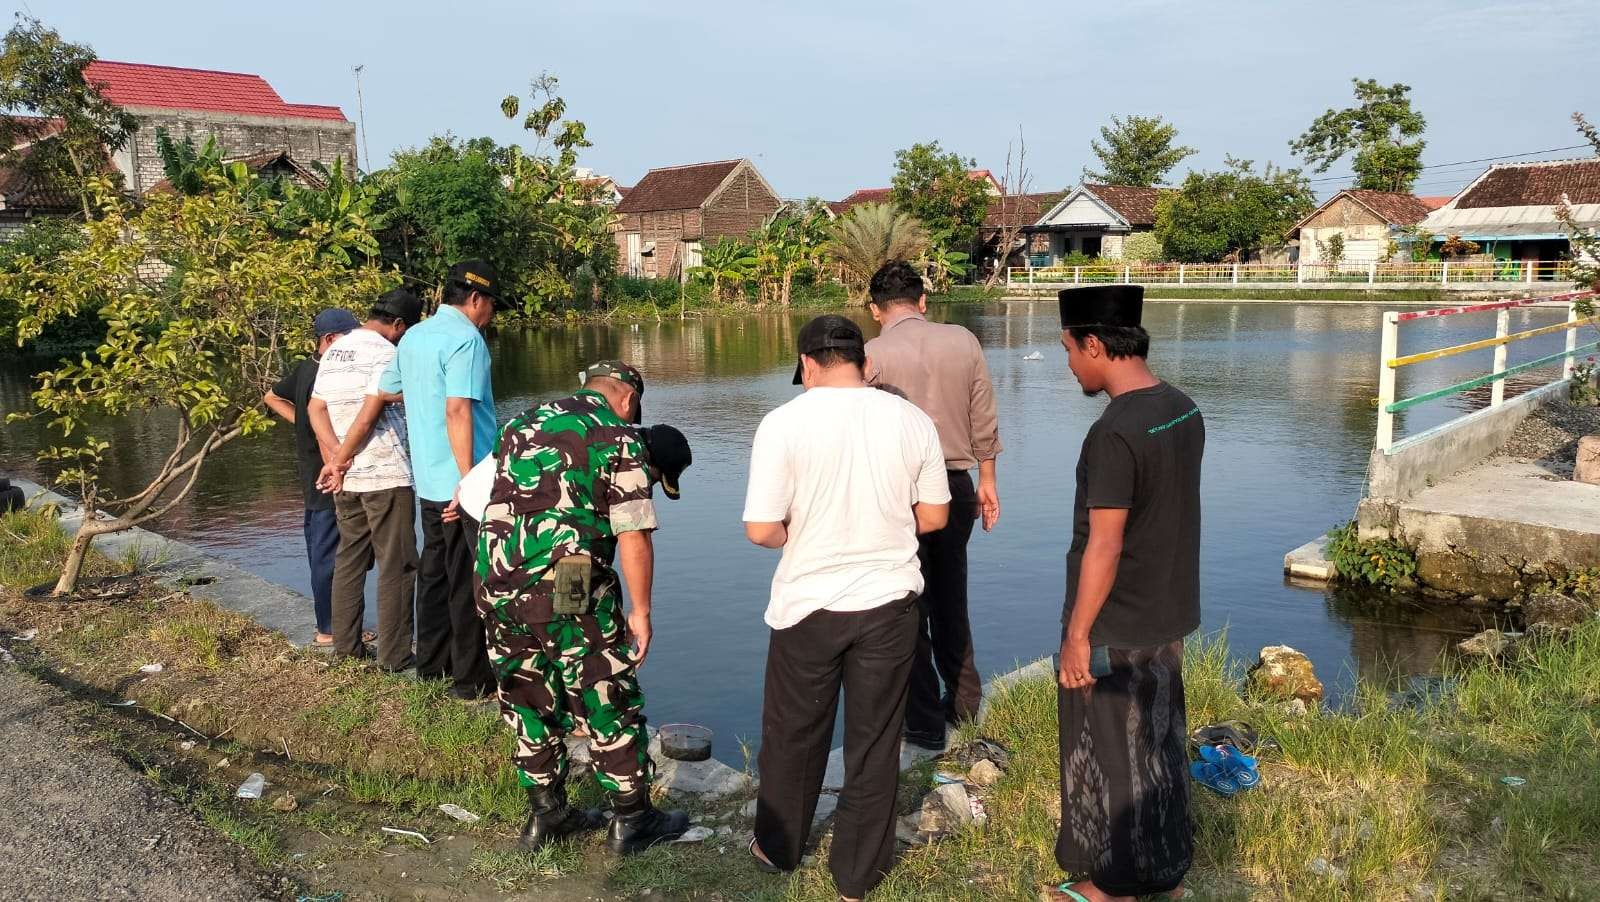 Anggota Polsek dan Koramil Sekaran serta disaksikan perangkat desa dan warga sekitar sedang mendatangi lokasi kejadian. (Foto: Istimewa)